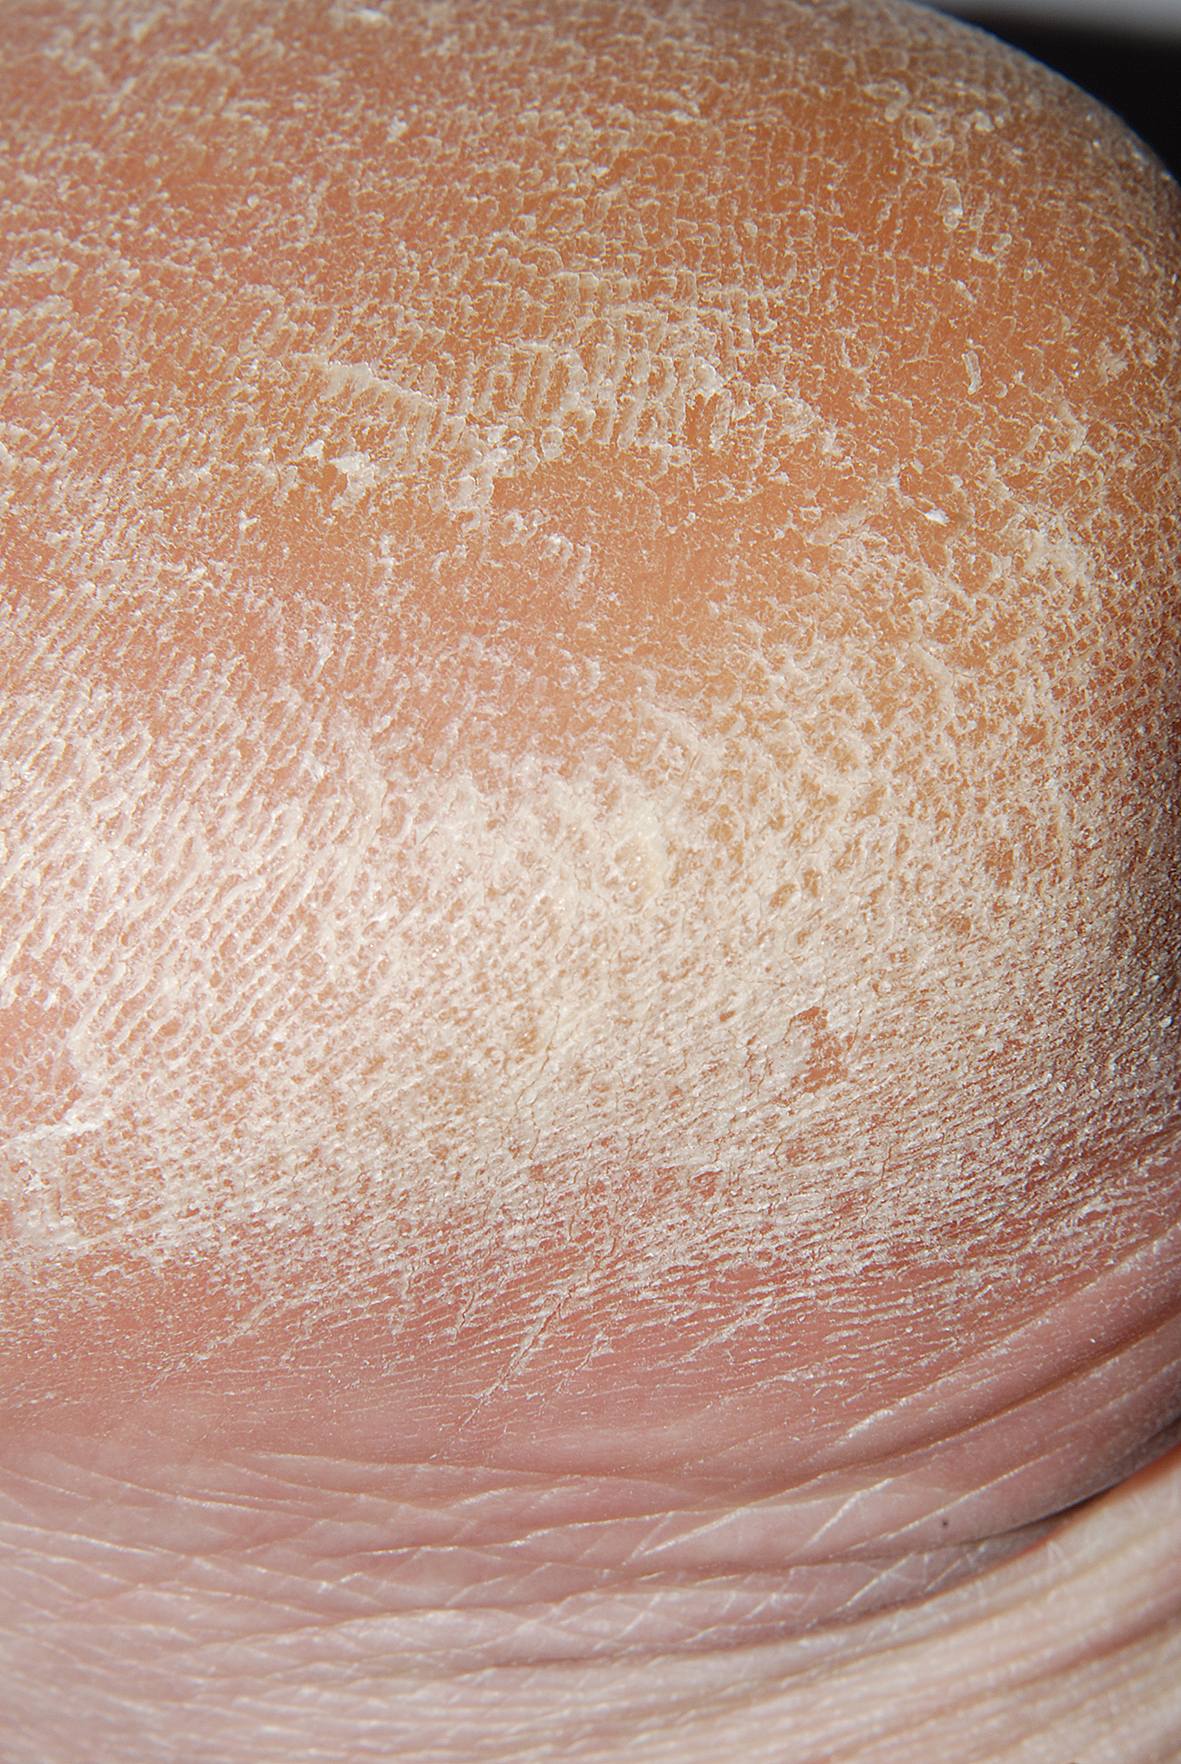 Pēdu ādas kseroze 56 gadus vecai pacientei